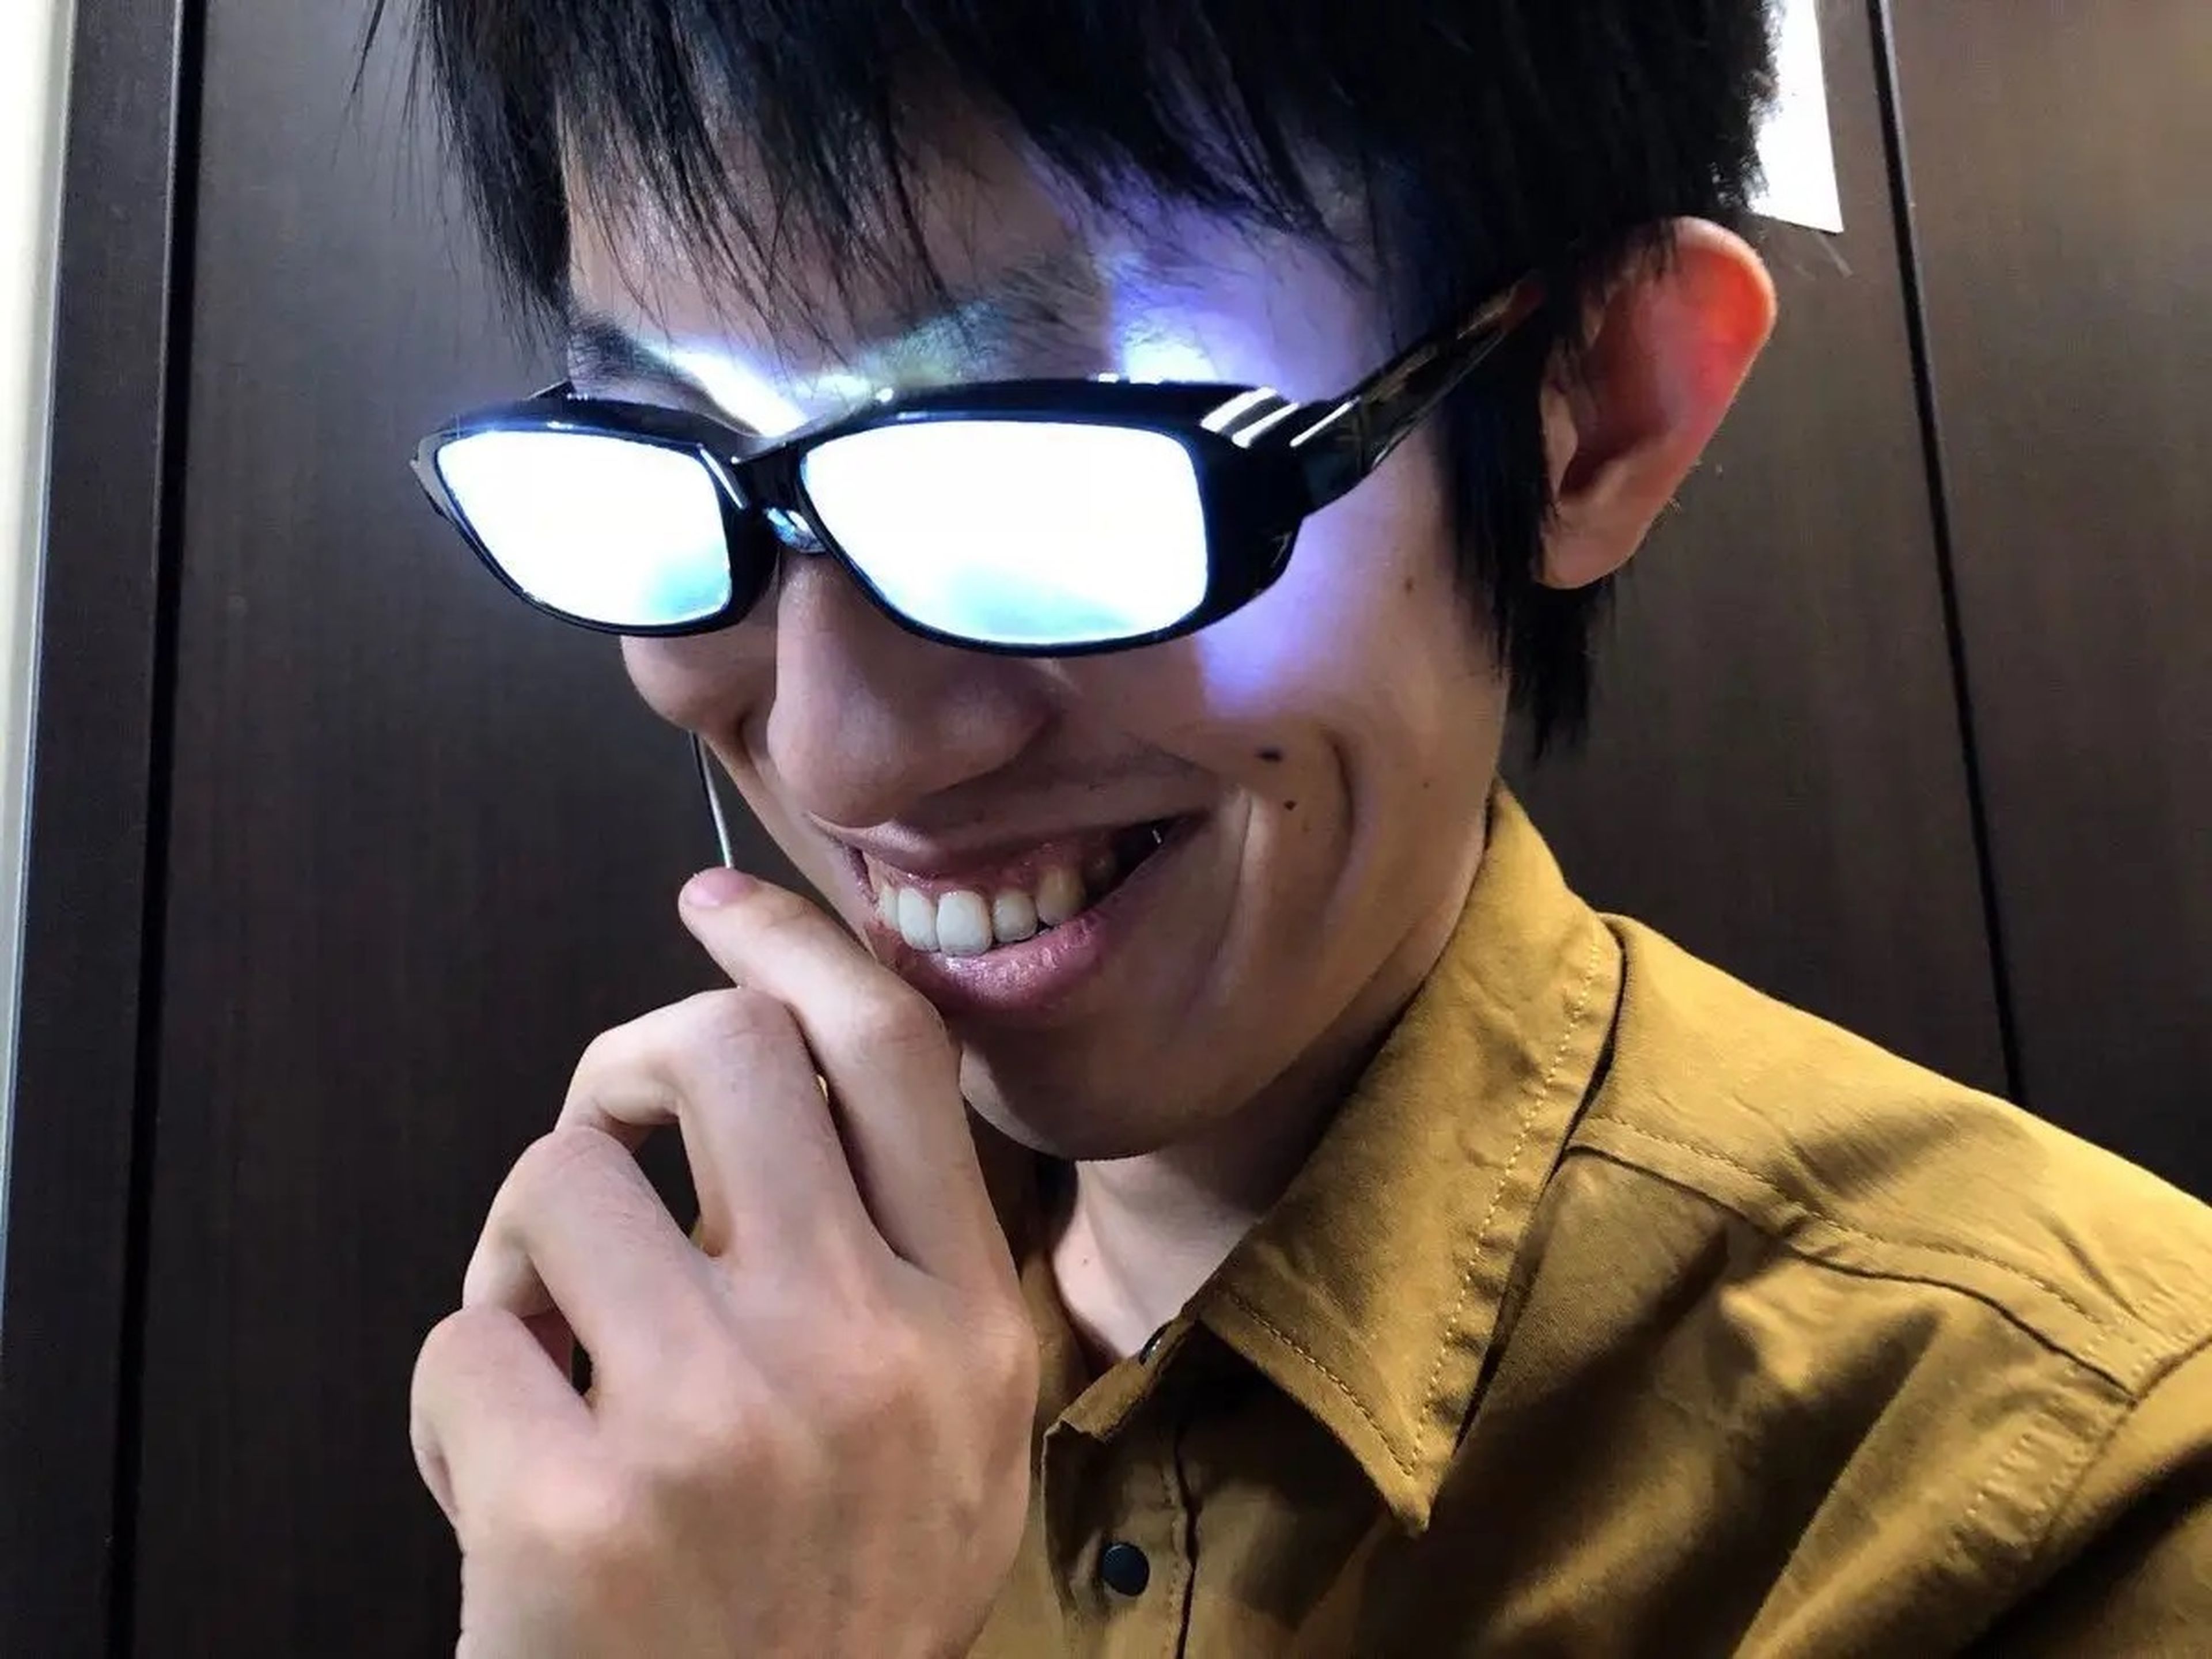 Las gafas brillantes de Kazuya ayudan al usuario a imitar a determinados personajes de manga y anime 'empollones, pero guays'. En cambio, no ayudan mucho a la hora de ver mejor.